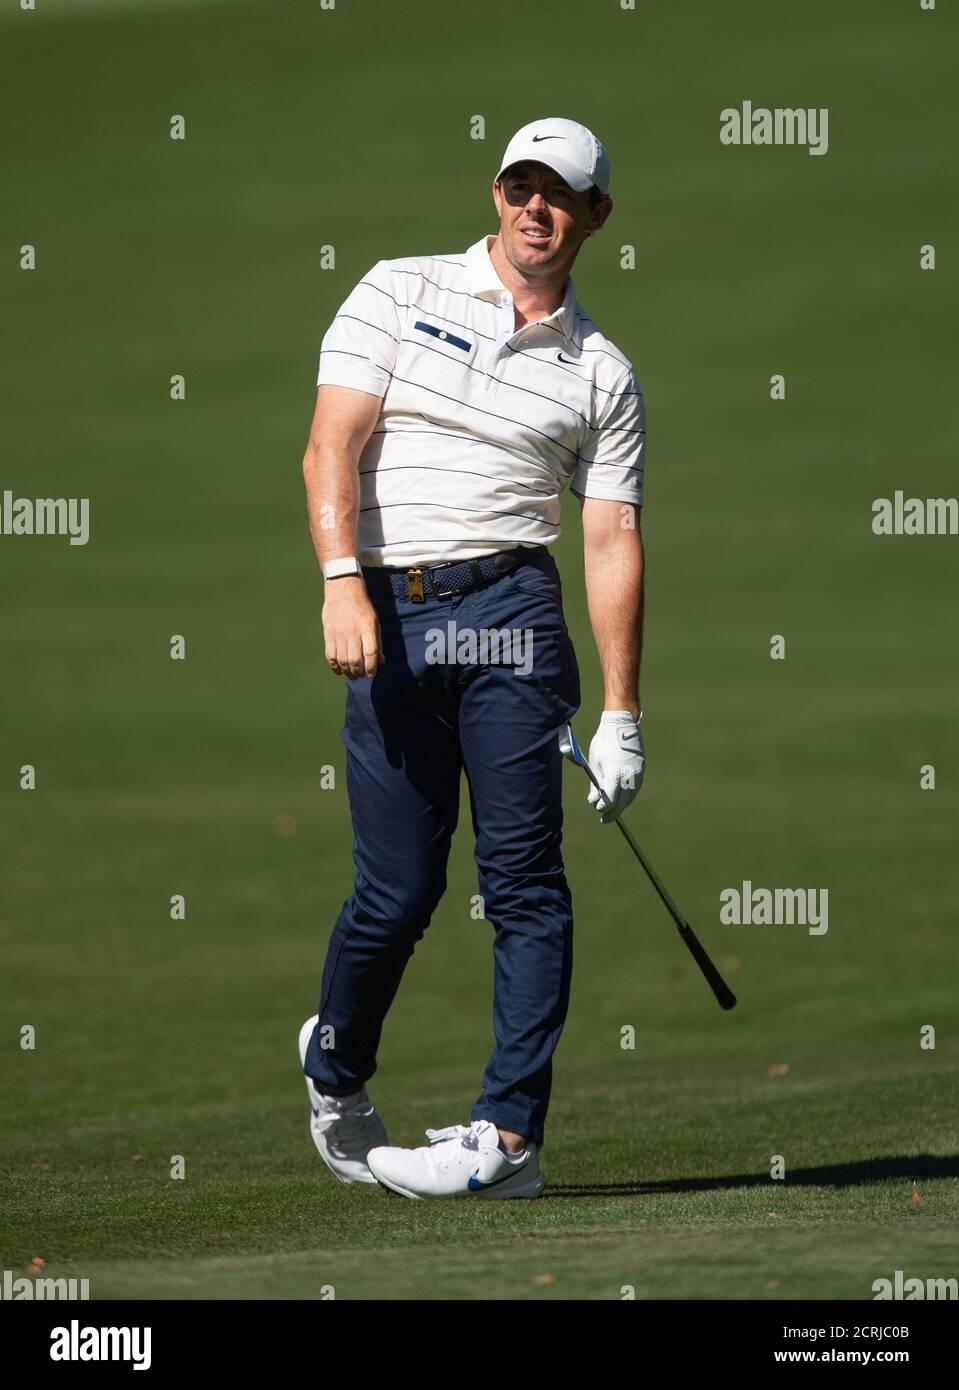 Rory McIlroy pendant la deuxième journée du championnat BMW PGA au club de golf de Wentworth, Surrey. CRÉDIT PHOTO : © MARK PAIN / PHOTO DE STOCK D'ALAMY Banque D'Images